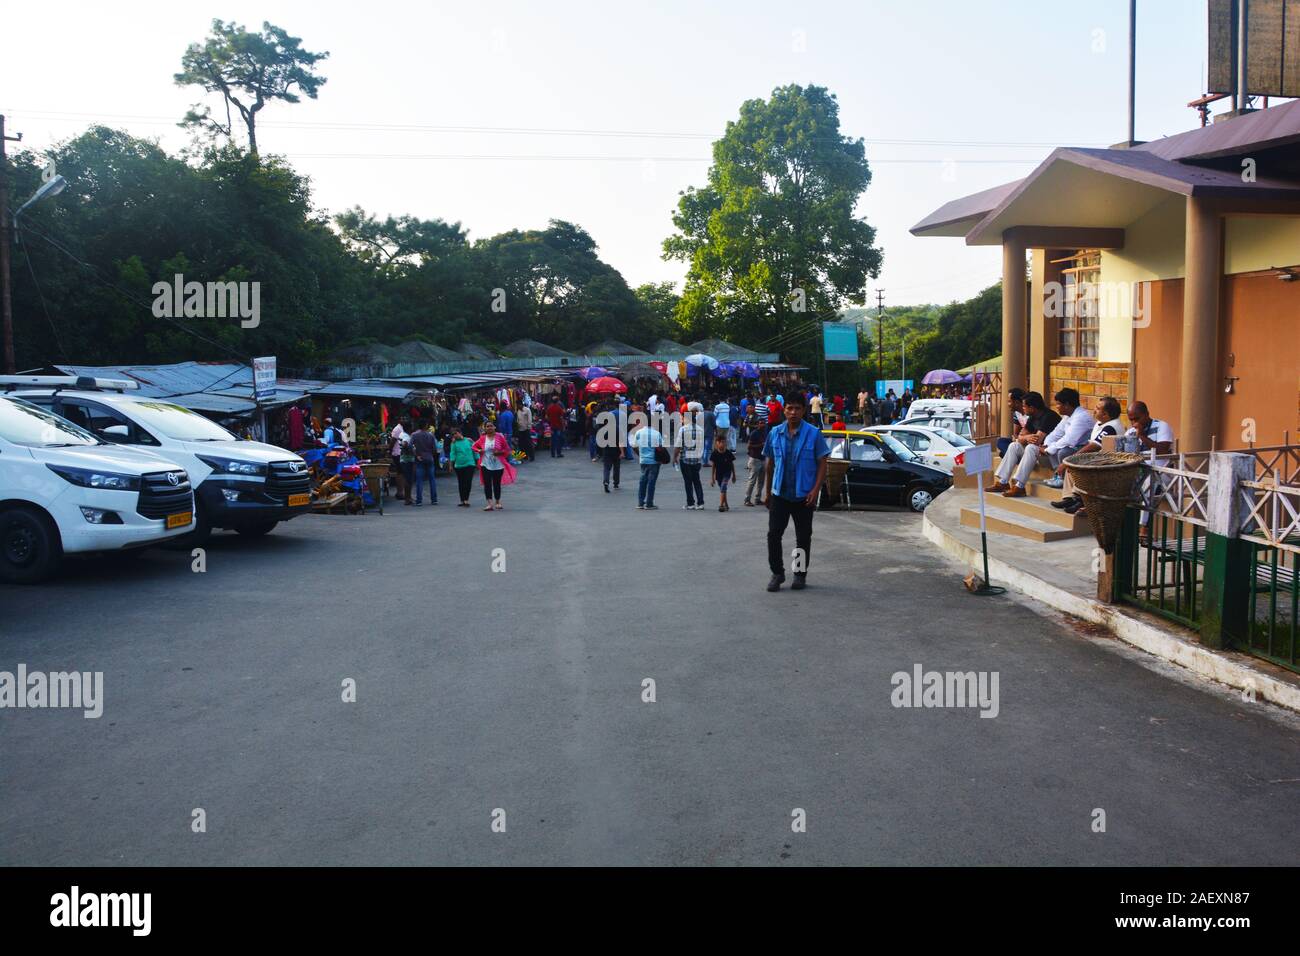 L'aire de stationnement des chutes de l'éléphant, la région de Shillong, Meghalaya avec rangées de voiture, les gens autour de l'itinérance, arbres, ciel ouvert, l'accent sélective. Banque D'Images